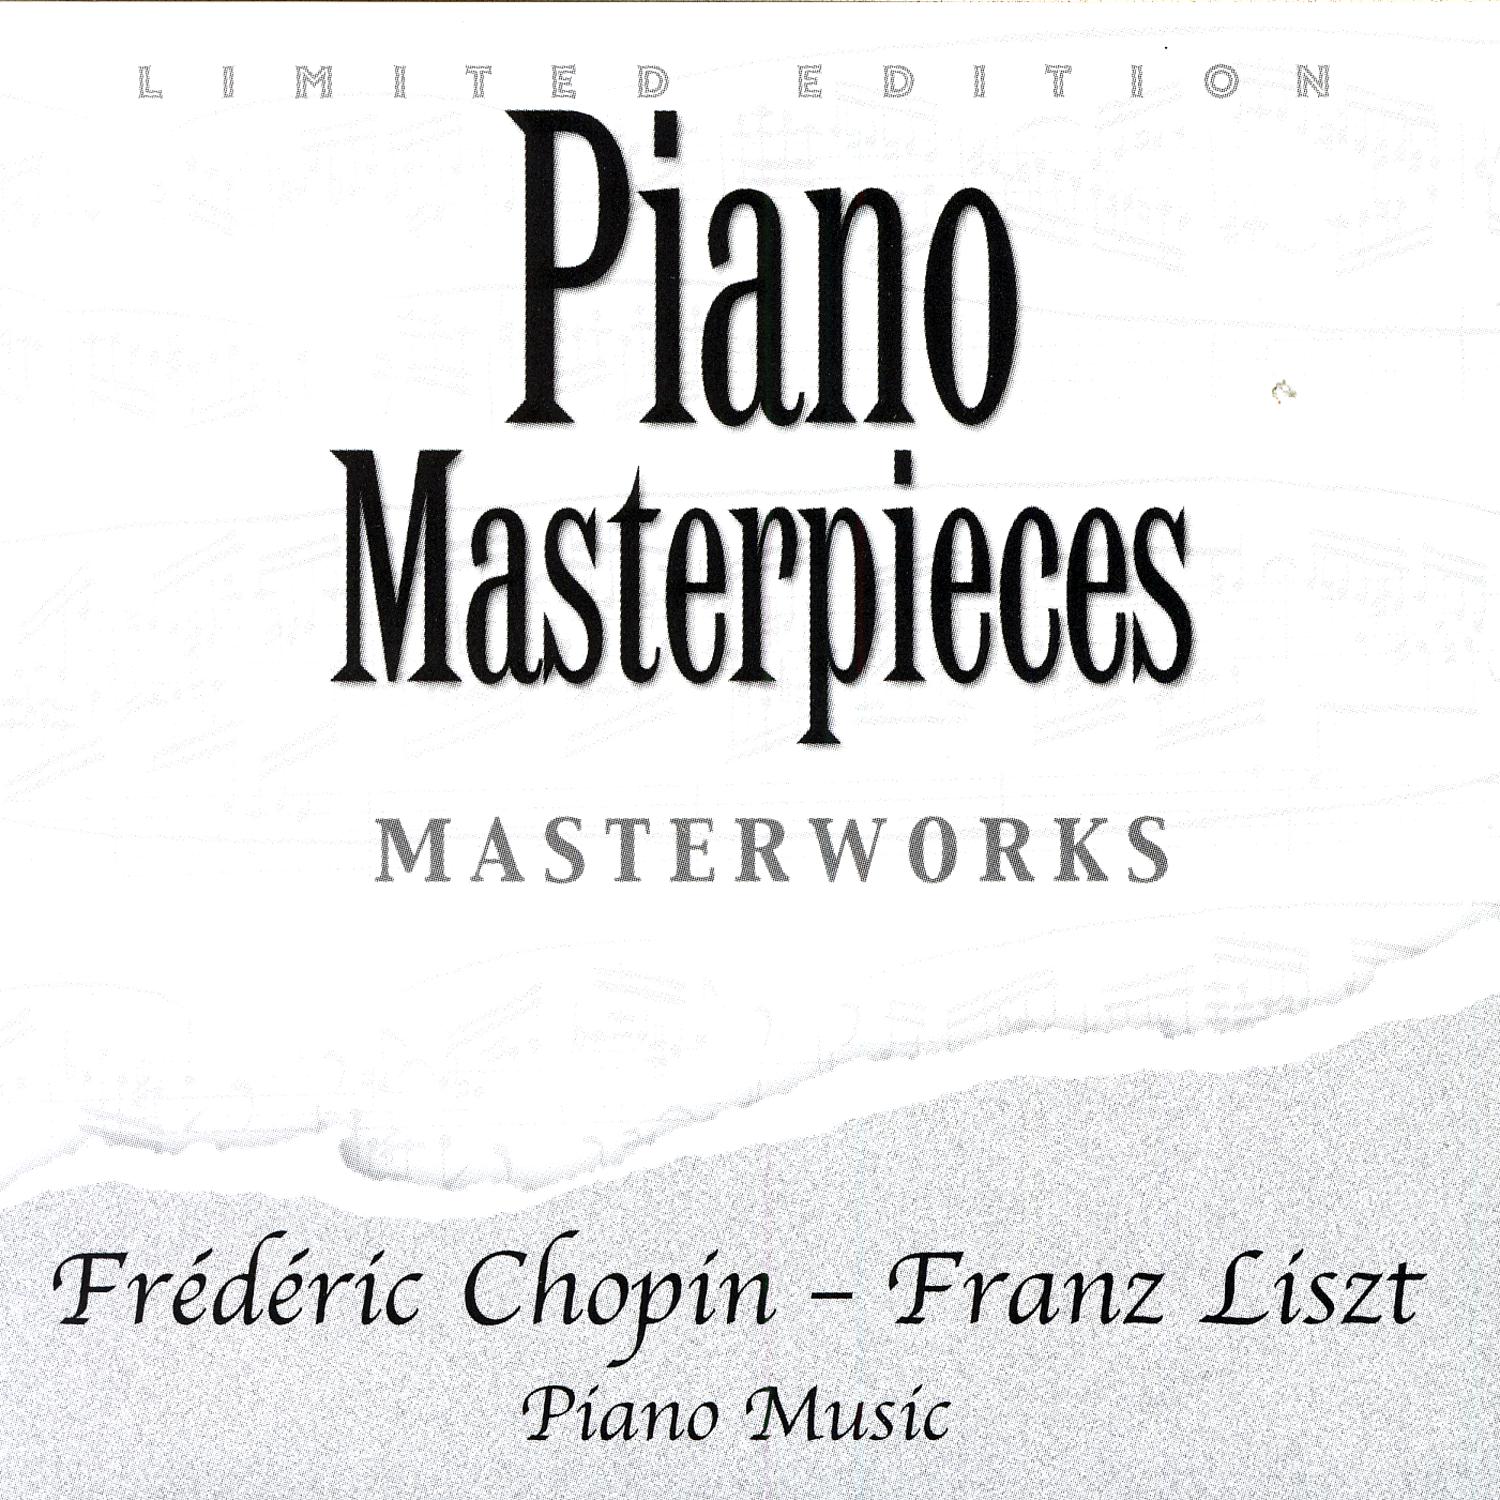 Fre de ric Chopin  Franz Liszt: Piano Music